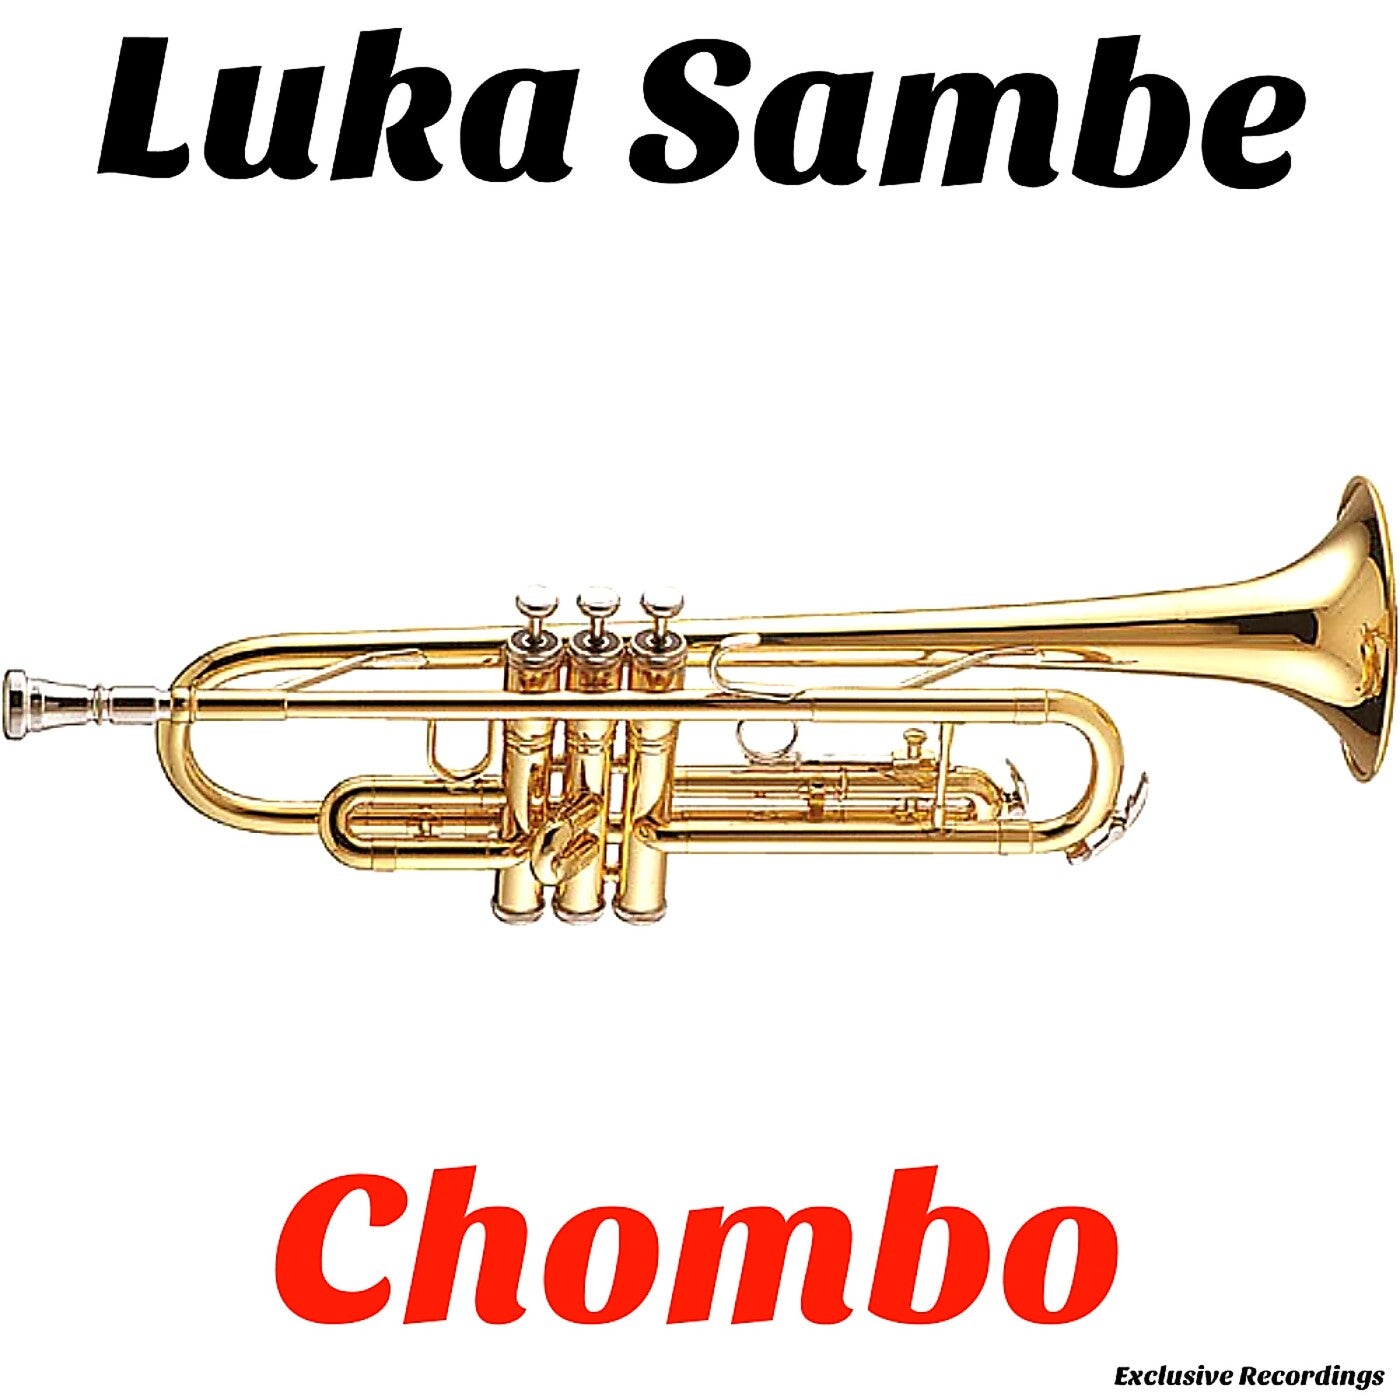 Chombo